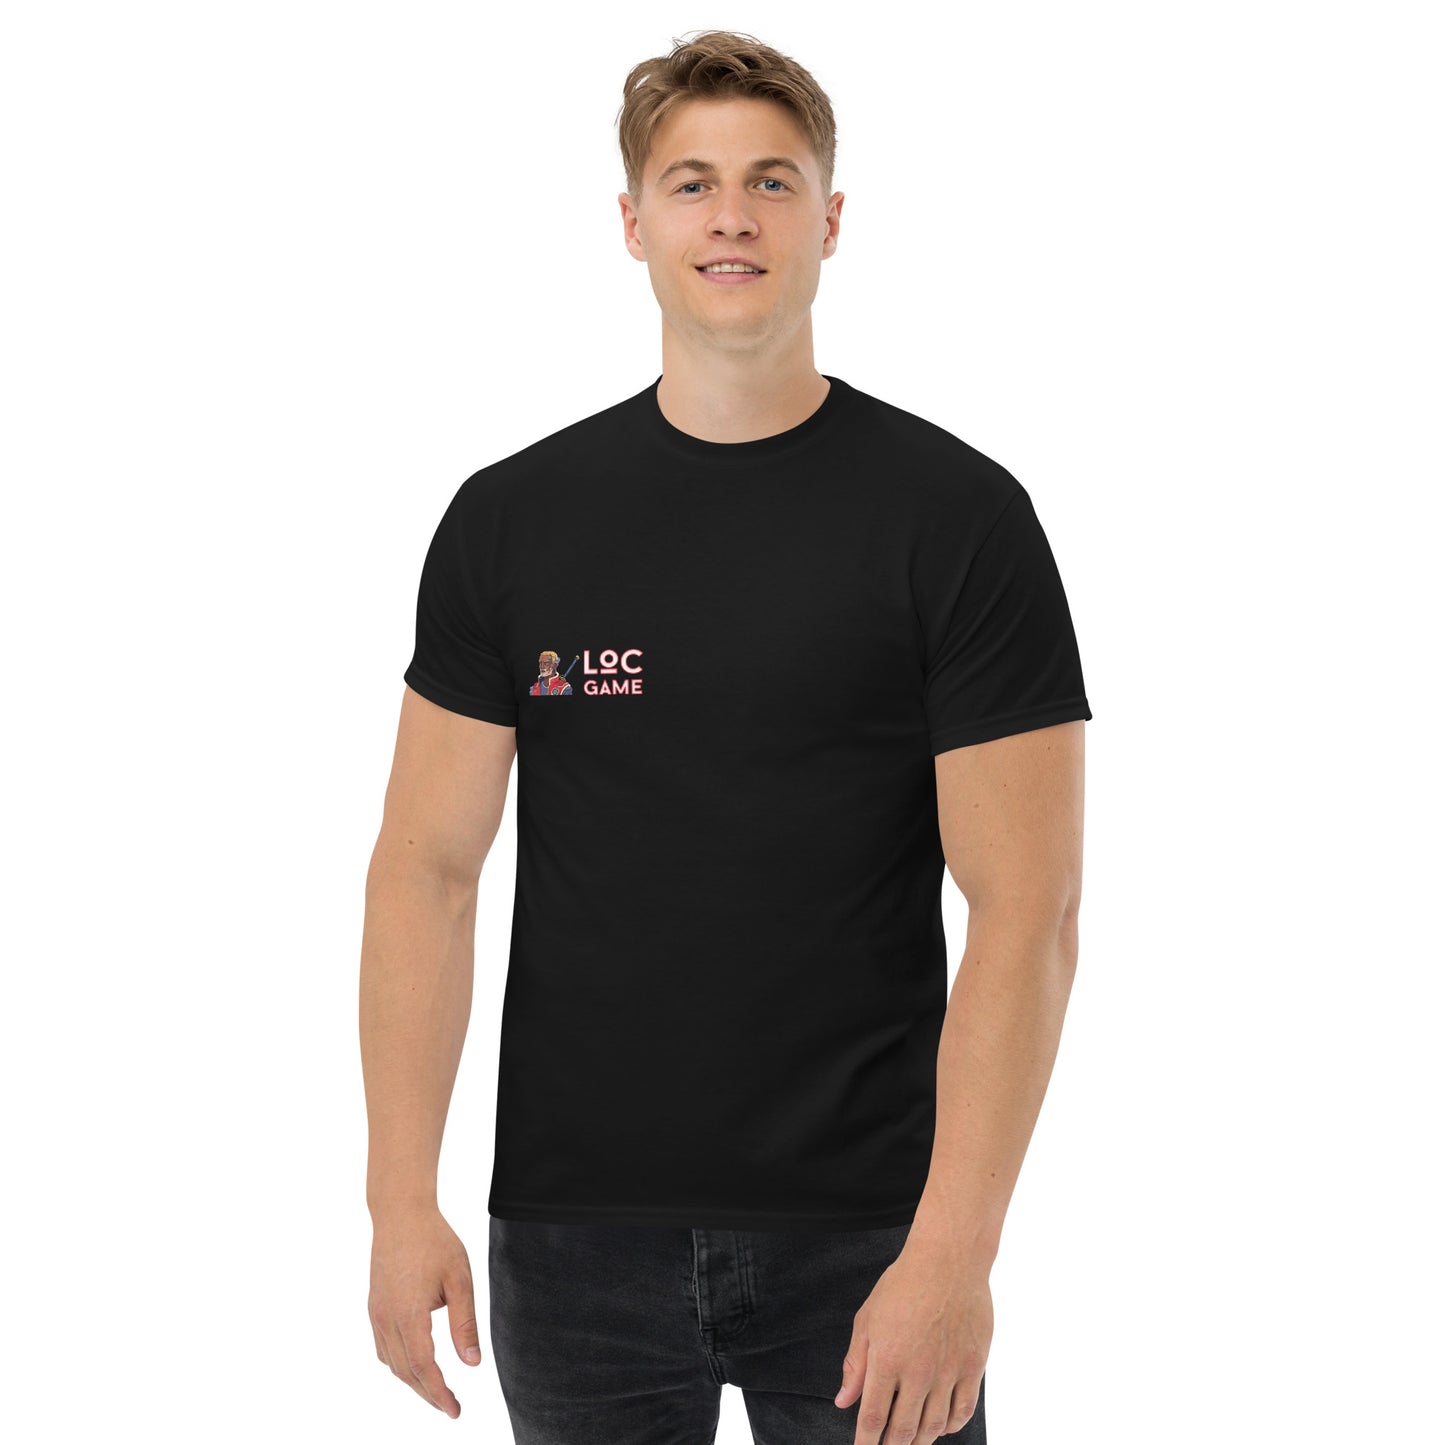 4Cs Controller T-shirt